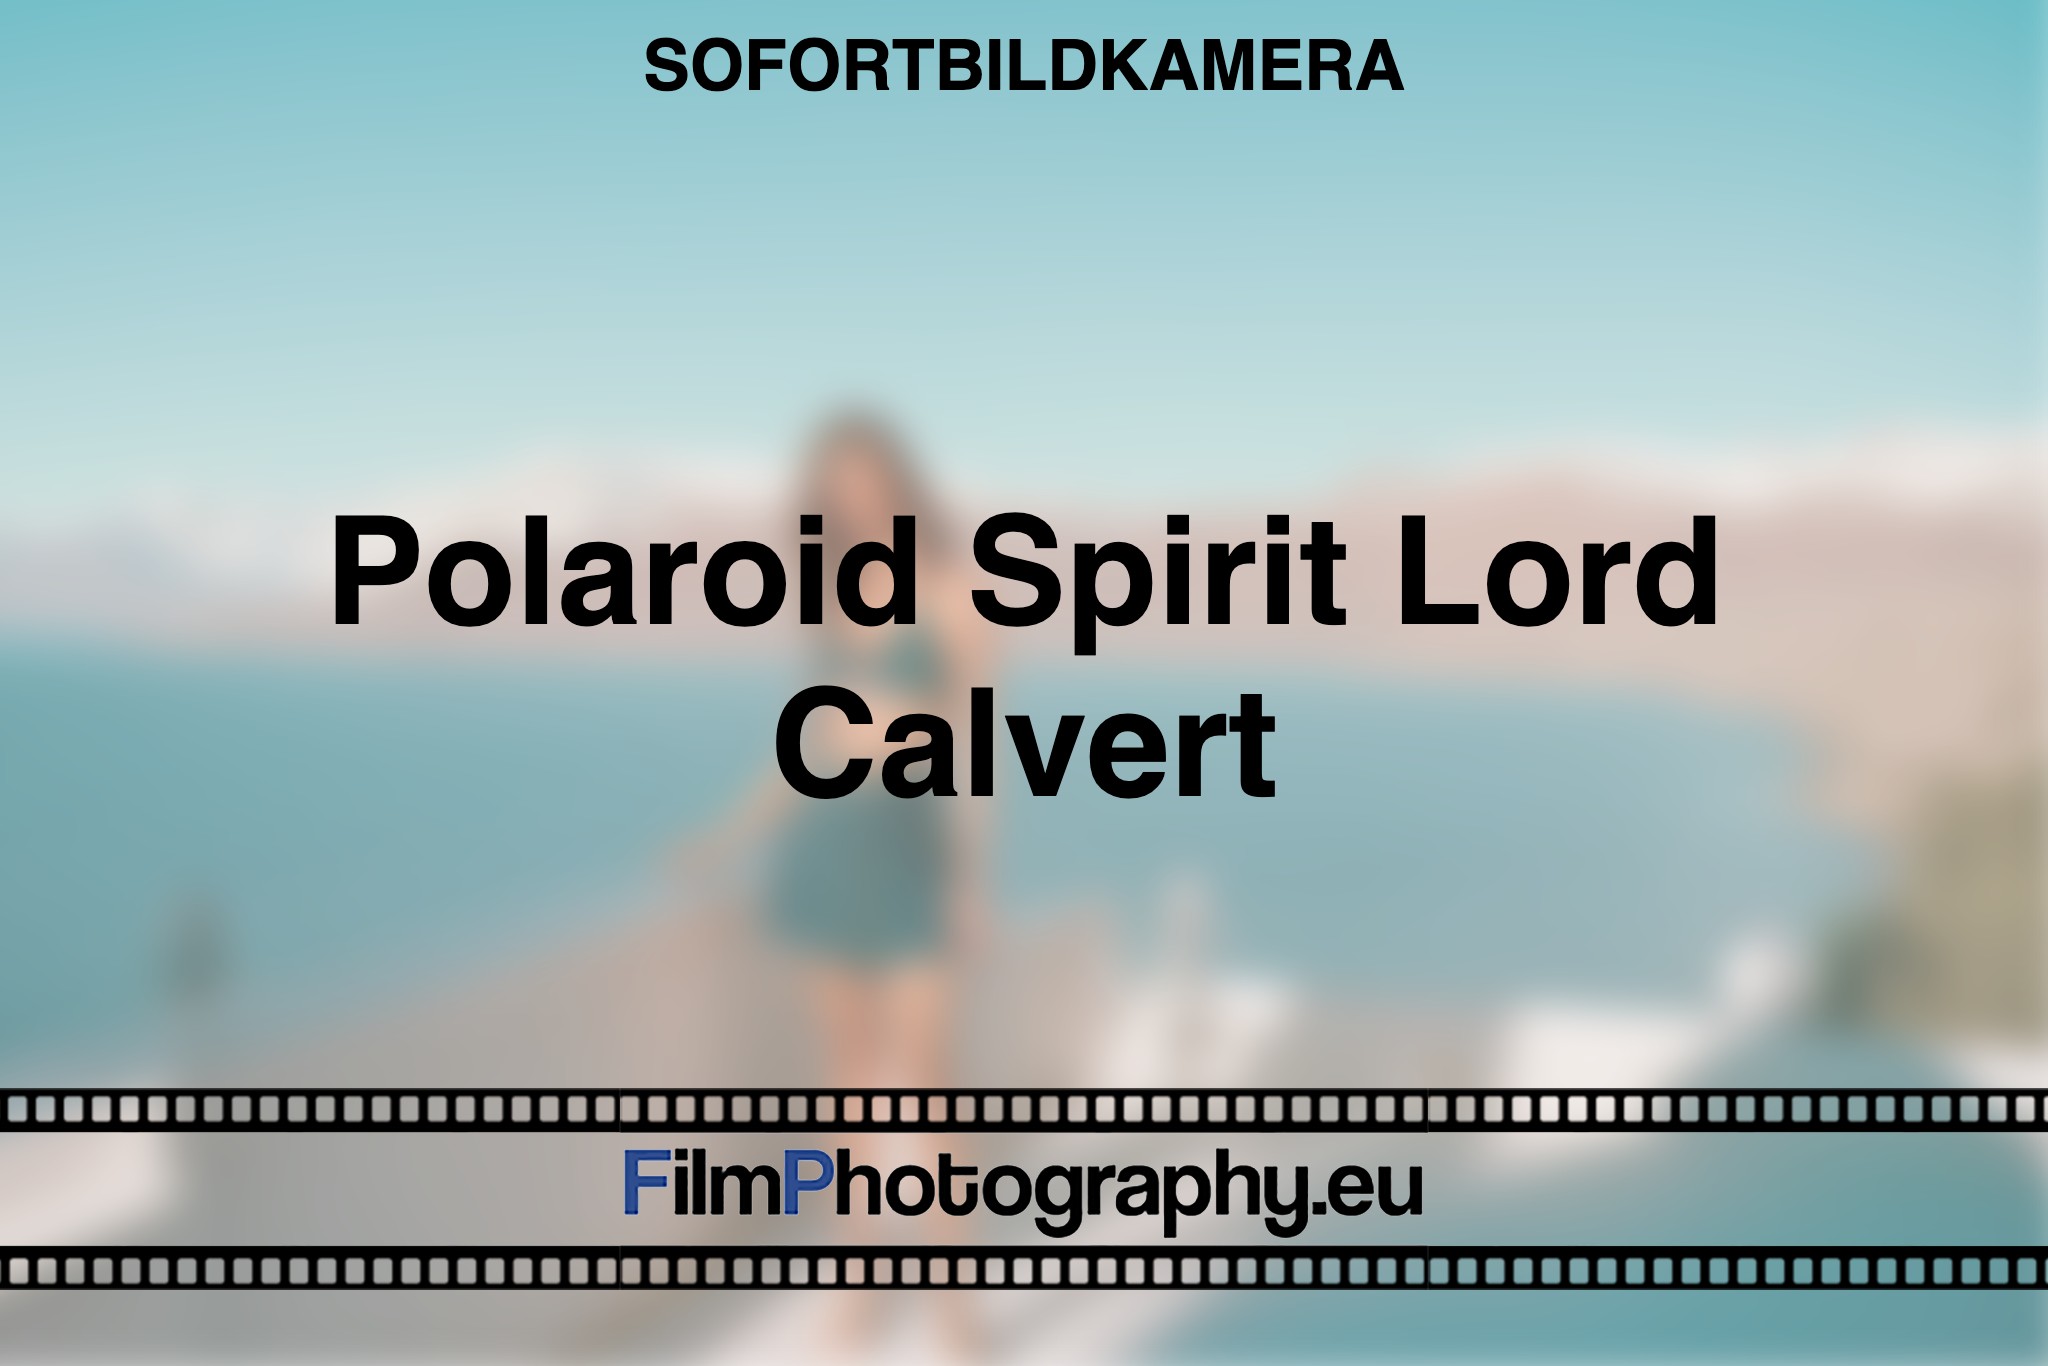 polaroid-spirit-lord-calvert-sofortbildkamera-bnv